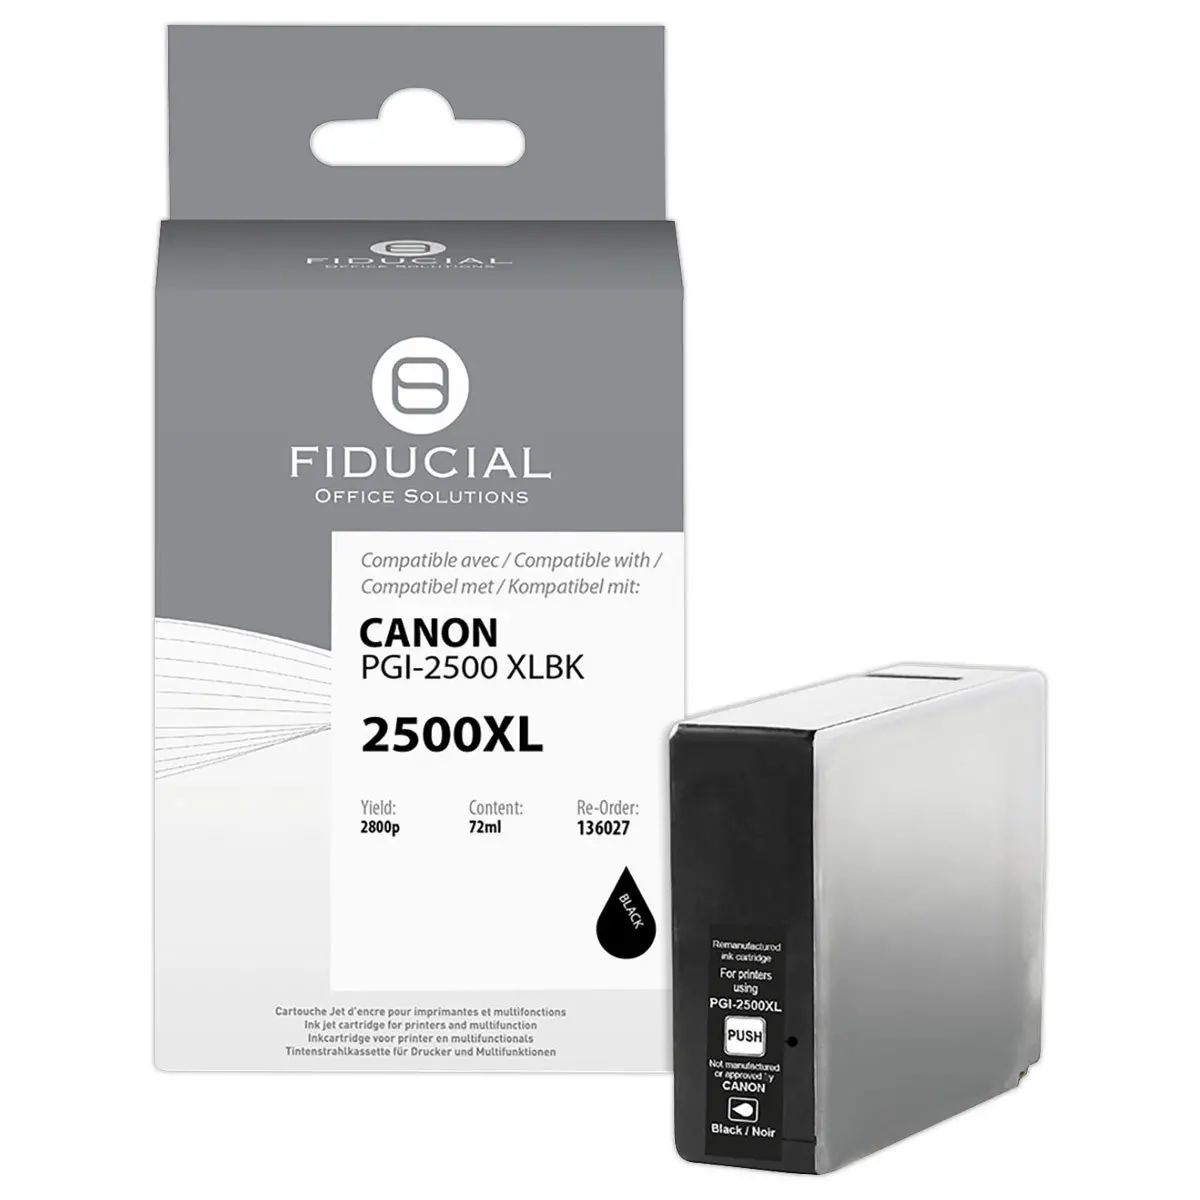 Cartouche Canon PGI-2500XL noire compatible FIDUCIAL - Compatibles